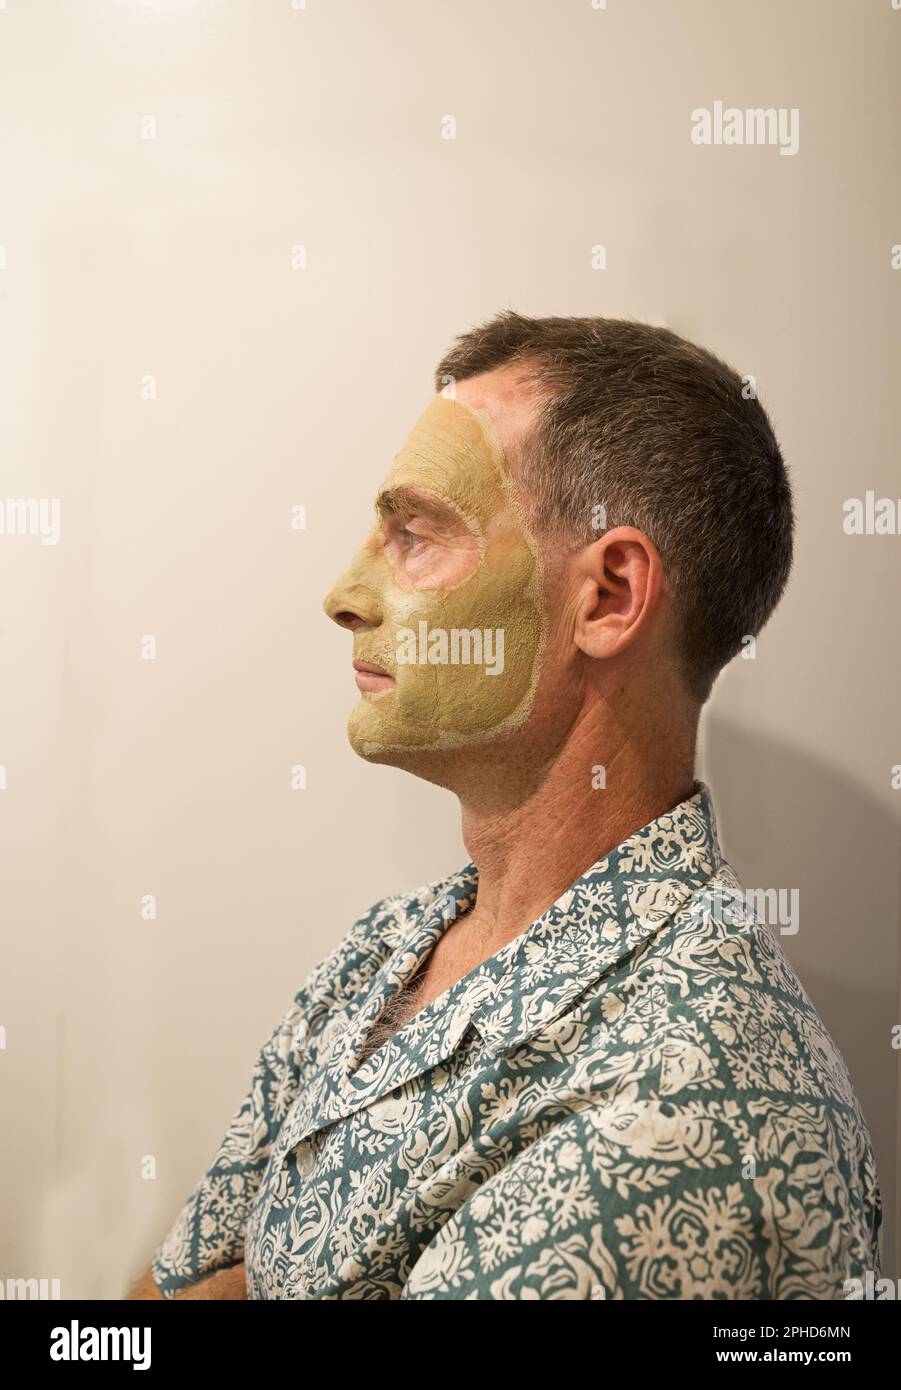 vue latérale d'un homme d'âge moyen avec un masque facial en argile verdâtre Banque D'Images